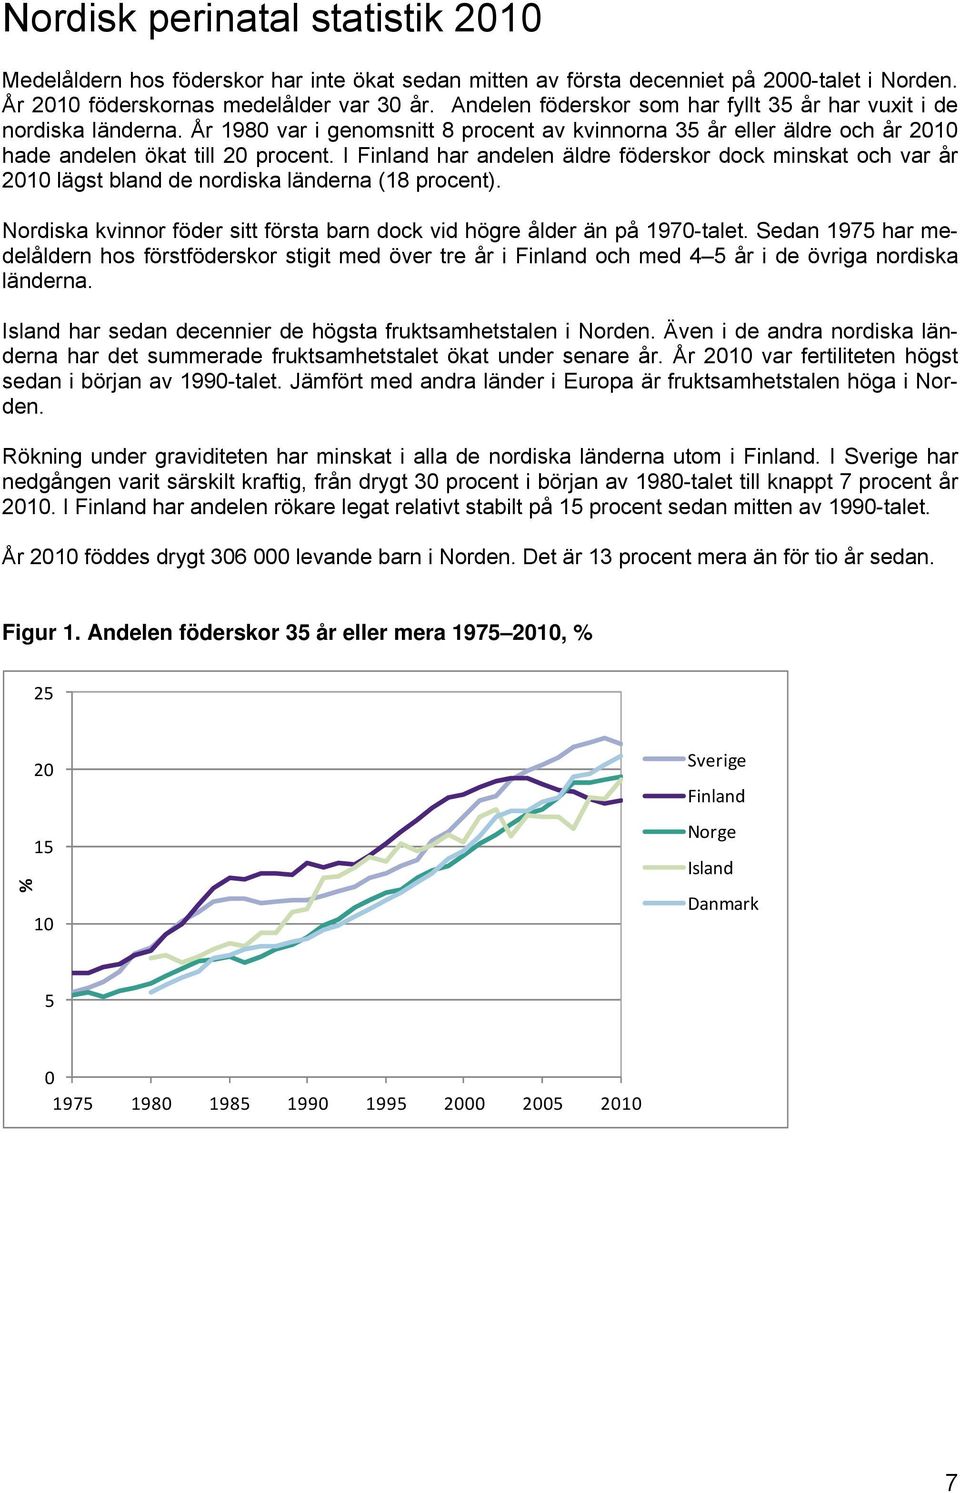 I Finland har andelen äldre föderskor dock minskat och var år 2010 lägst bland de nordiska länderna (18 procent). Nordiska kvinnor föder sitt första barn dock vid högre ålder än på 1970-talet.